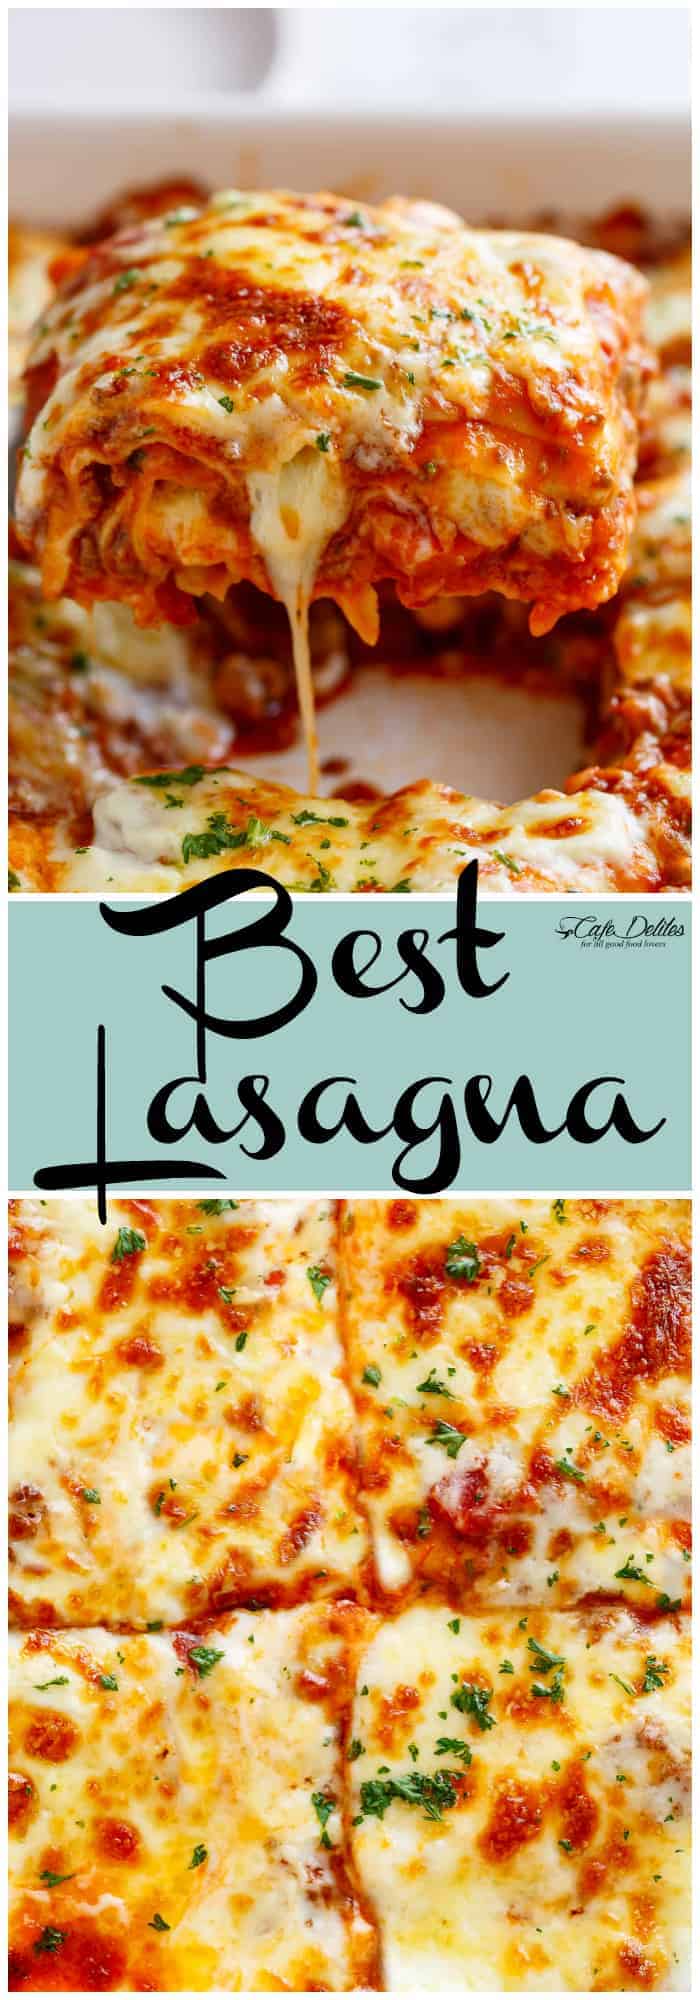 Best Lasagna - Cafe Delites